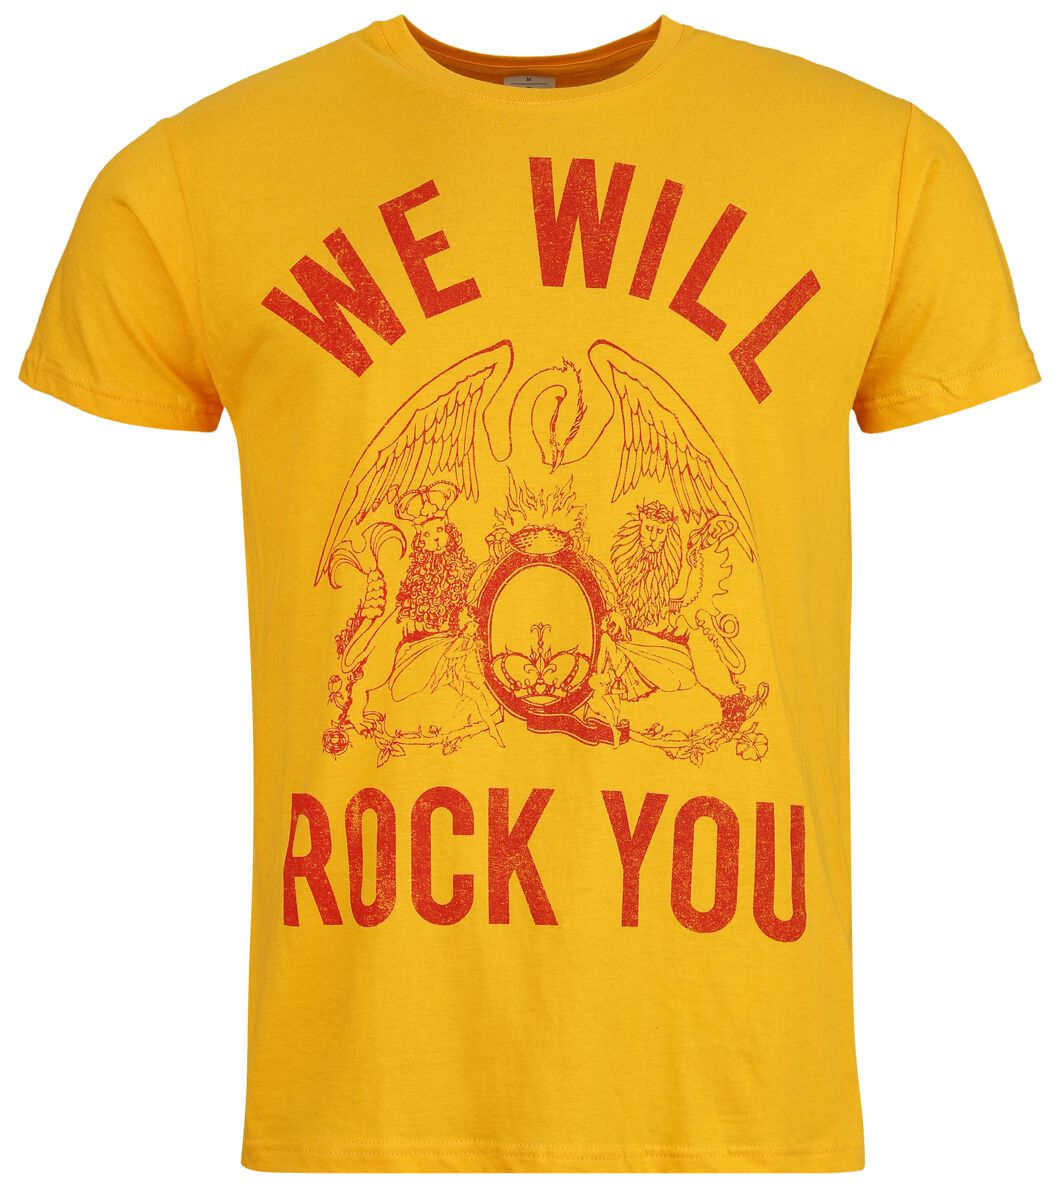 Queen T-Shirt - We Will Rock You - S bis XL - für Männer - Größe L - orange  - Lizenziertes Merchandise!